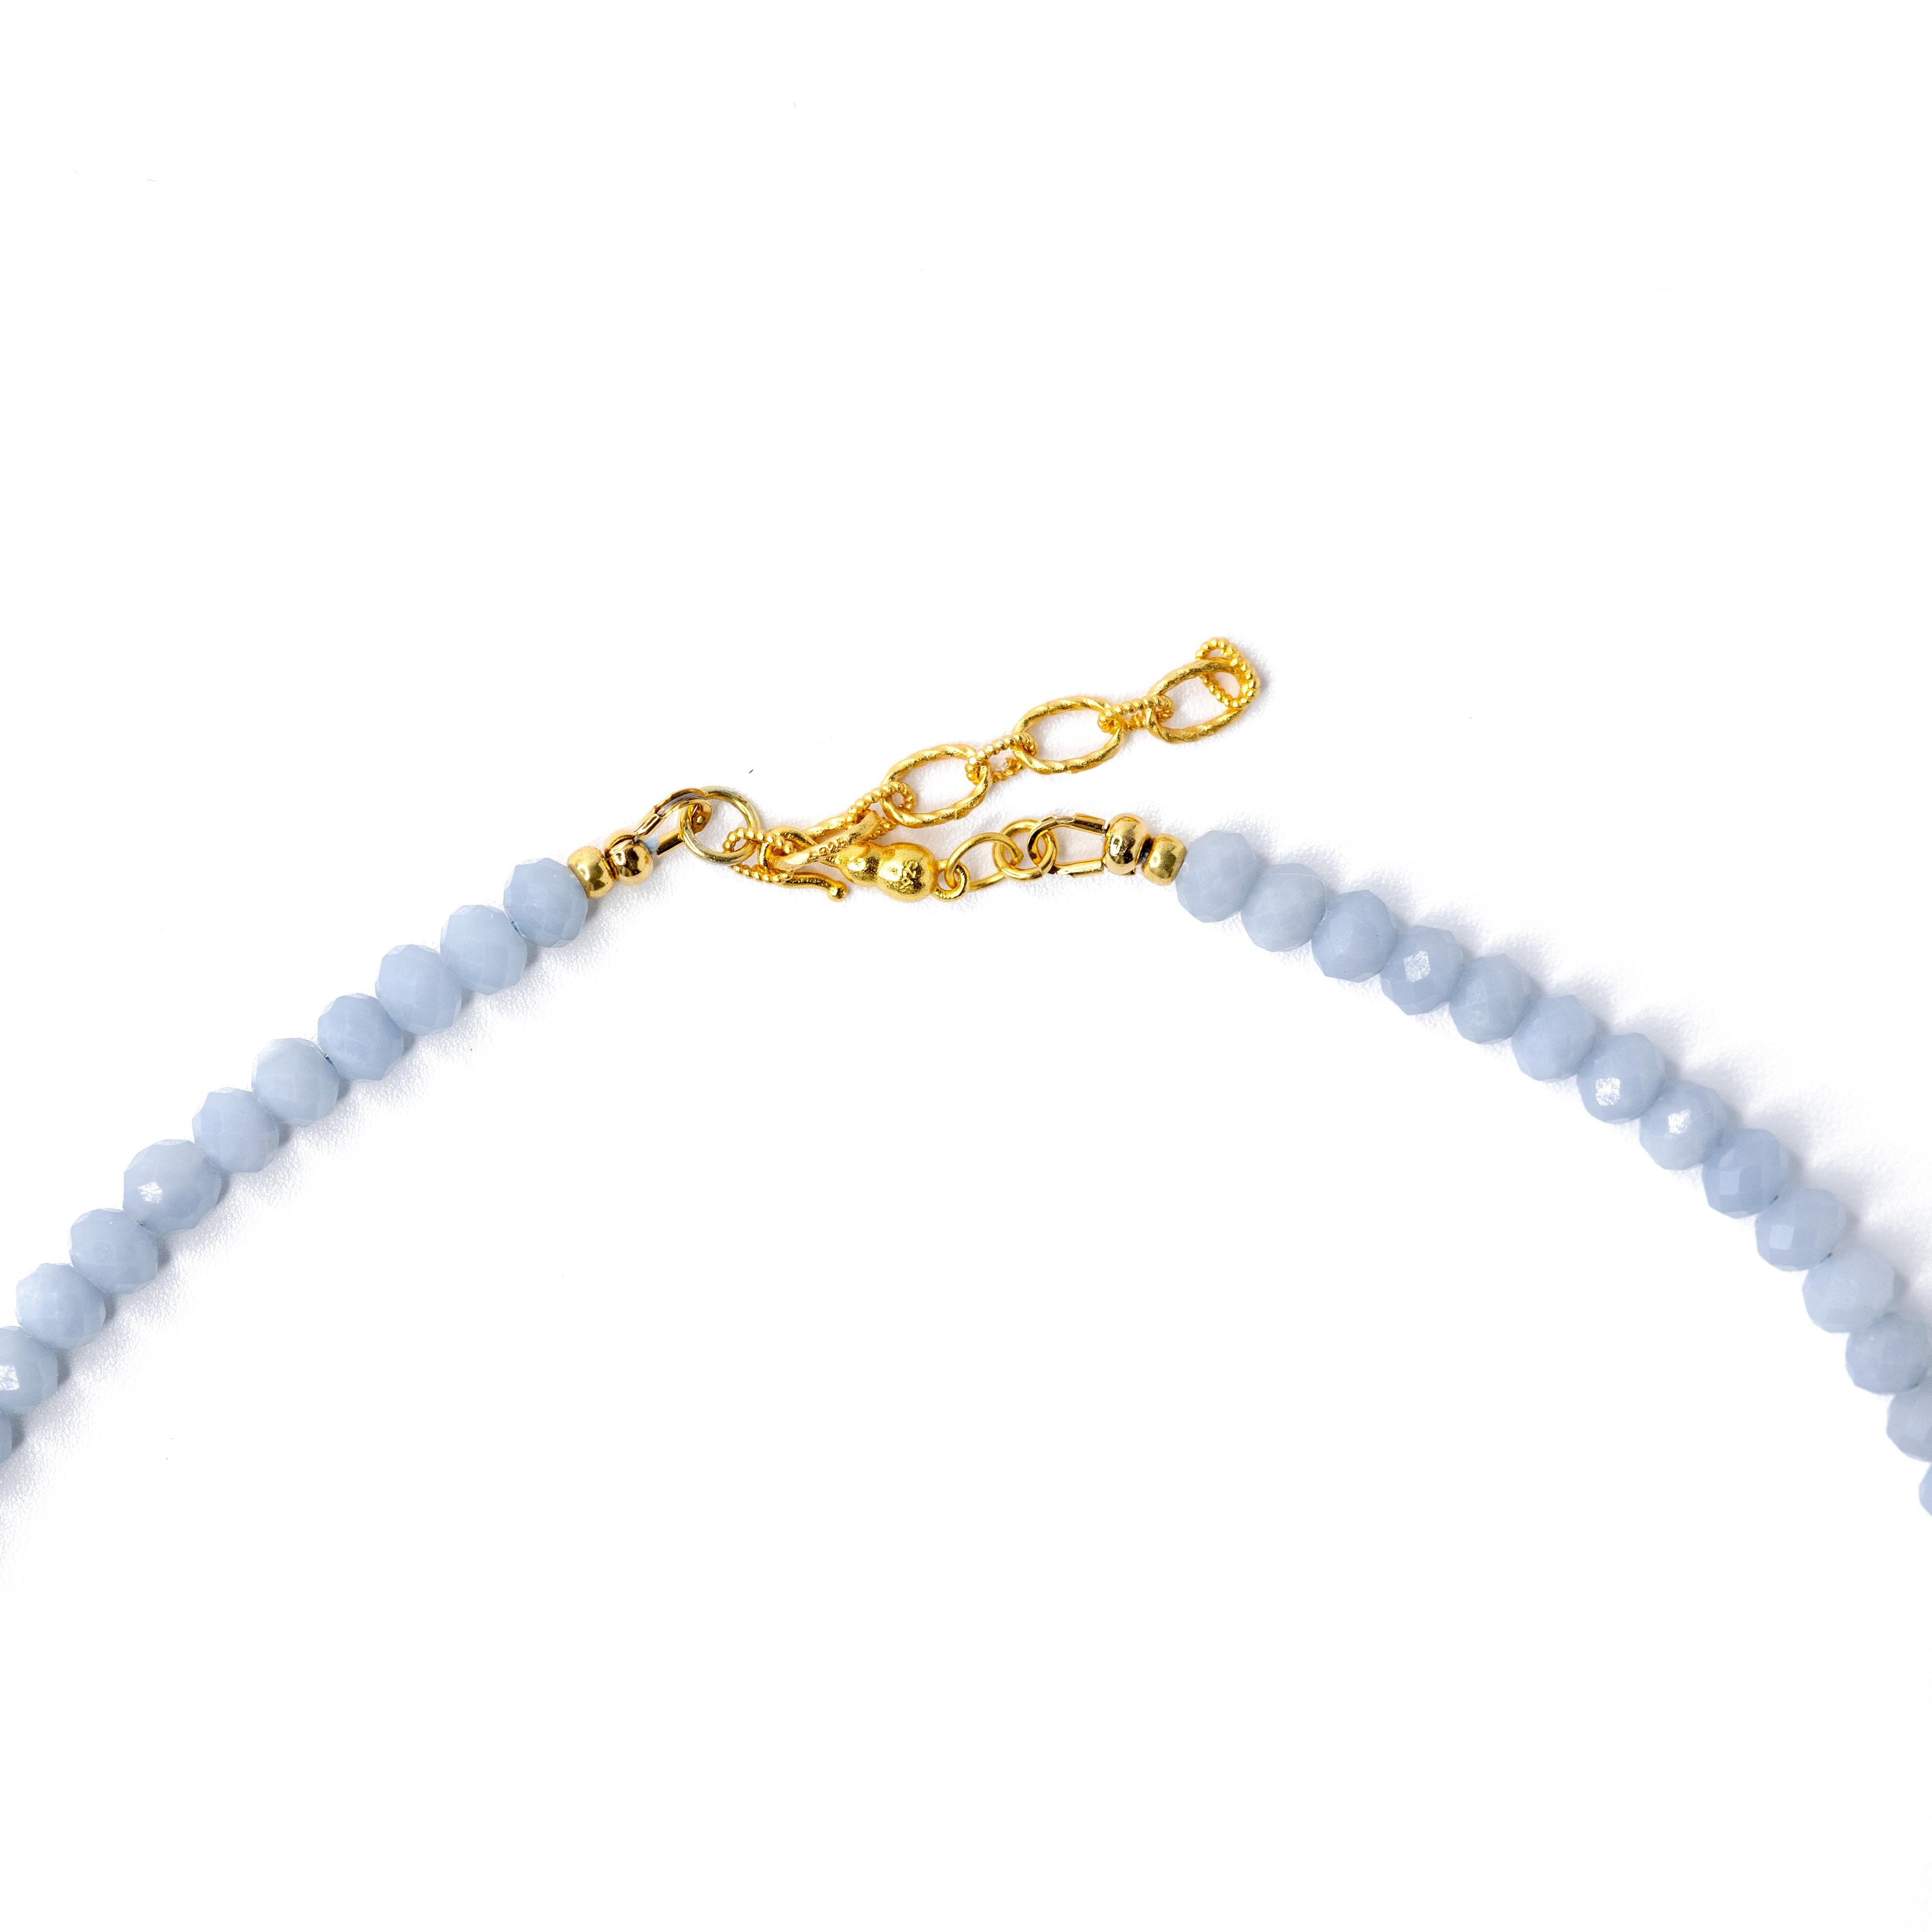 Décorez votre décolleté avec ce superbe collier ras de cou en perles d'or Baby Blue Angelite, fait à la main à la perfection. Son design unique de perles ajoute une touche d'élégance à votre tenue, ce qui en fait un accessoire parfait pour toute